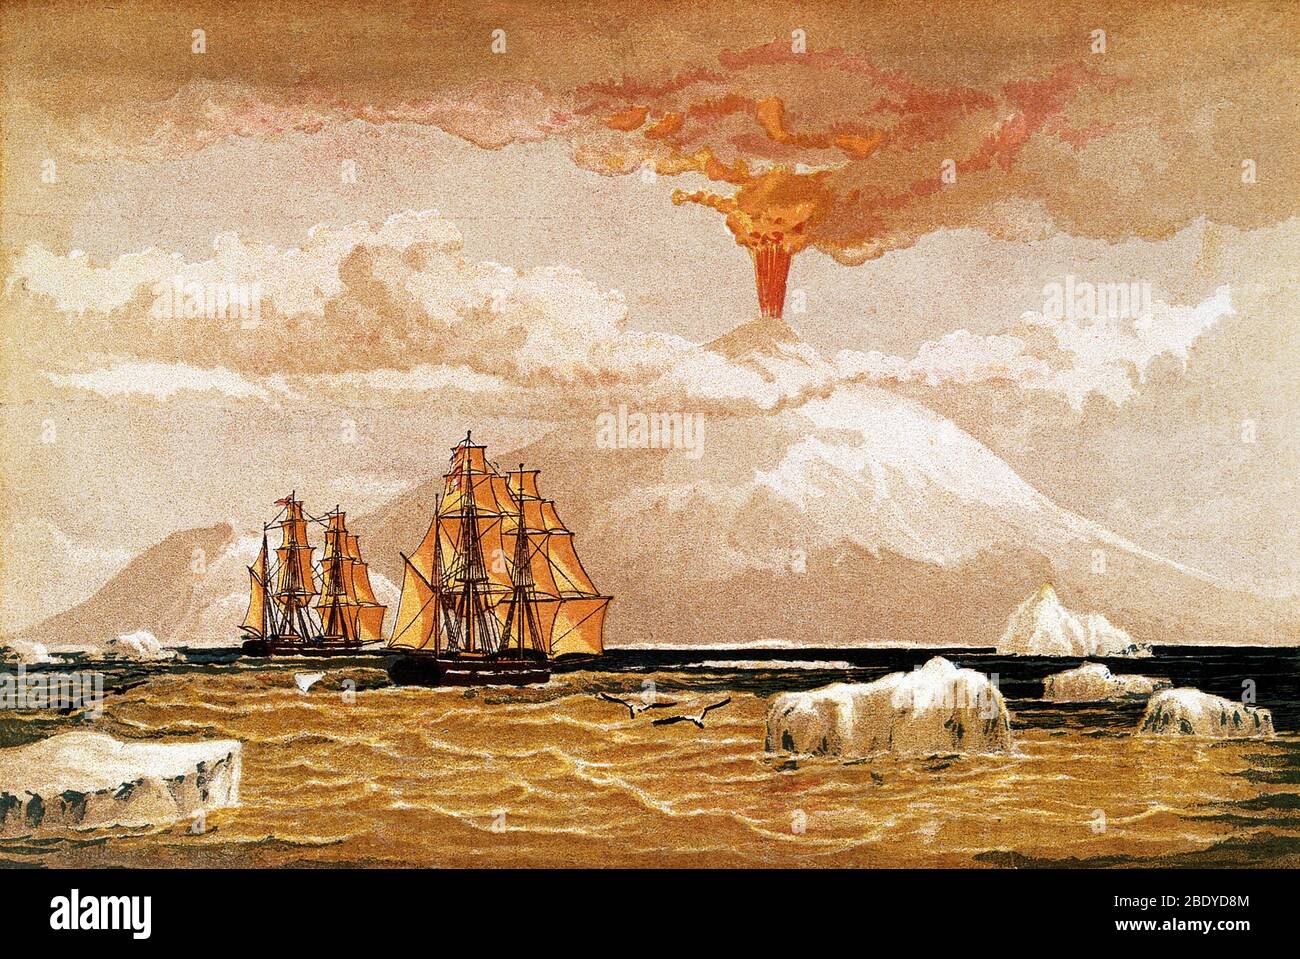 Mount Erebus, Antarktis: Der Vulkan in Eruption. Chromolithographie von 1868. Der Berg Erebus wurde am 27. Januar 1841 vom Polarforscher Sir James Clark Ross entdeckt (und als Ausbruch beobachtet), der ihn und seinen Begleiter, den Berg Terror, nach seinen Schiffen Erebus und Terror benannte. Anwesend mit Ross auf dem Erebus war der junge Joseph Hooker, zukünftiger Präsident der Royal Society. Der Mount Erebus ist der südlichste aktive Vulkan der Erde und der aktivste Vulkan der Antarktis mit einer Gipfelhöhe von 3,794 Metern (12,448 ft). Es liegt auf Ross Island. Stockfoto